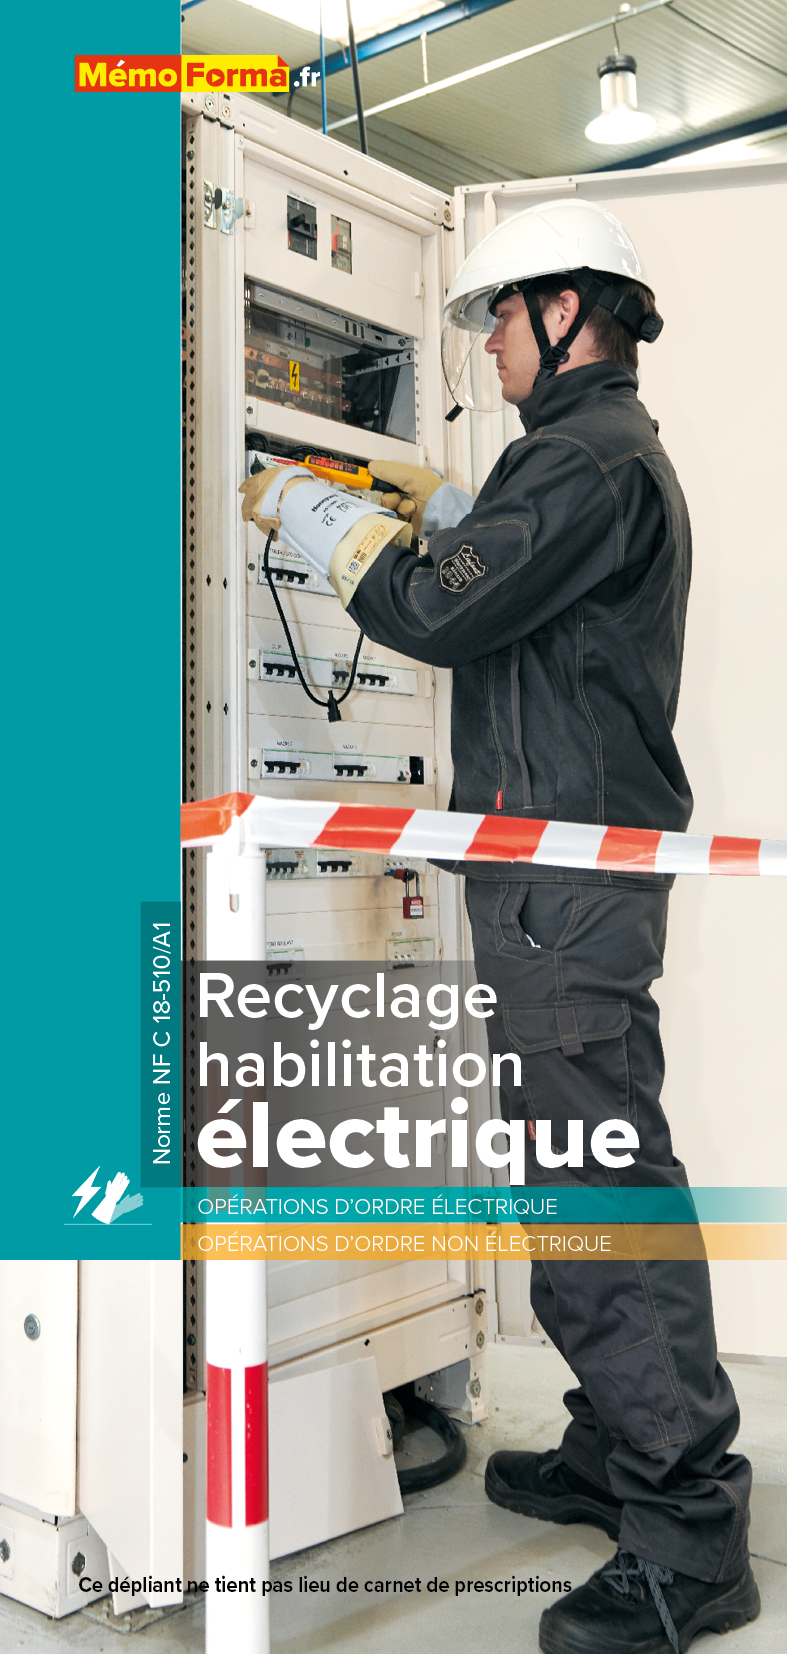 Dépliant – Recyclage habilitation électrique - MémoForma.fr